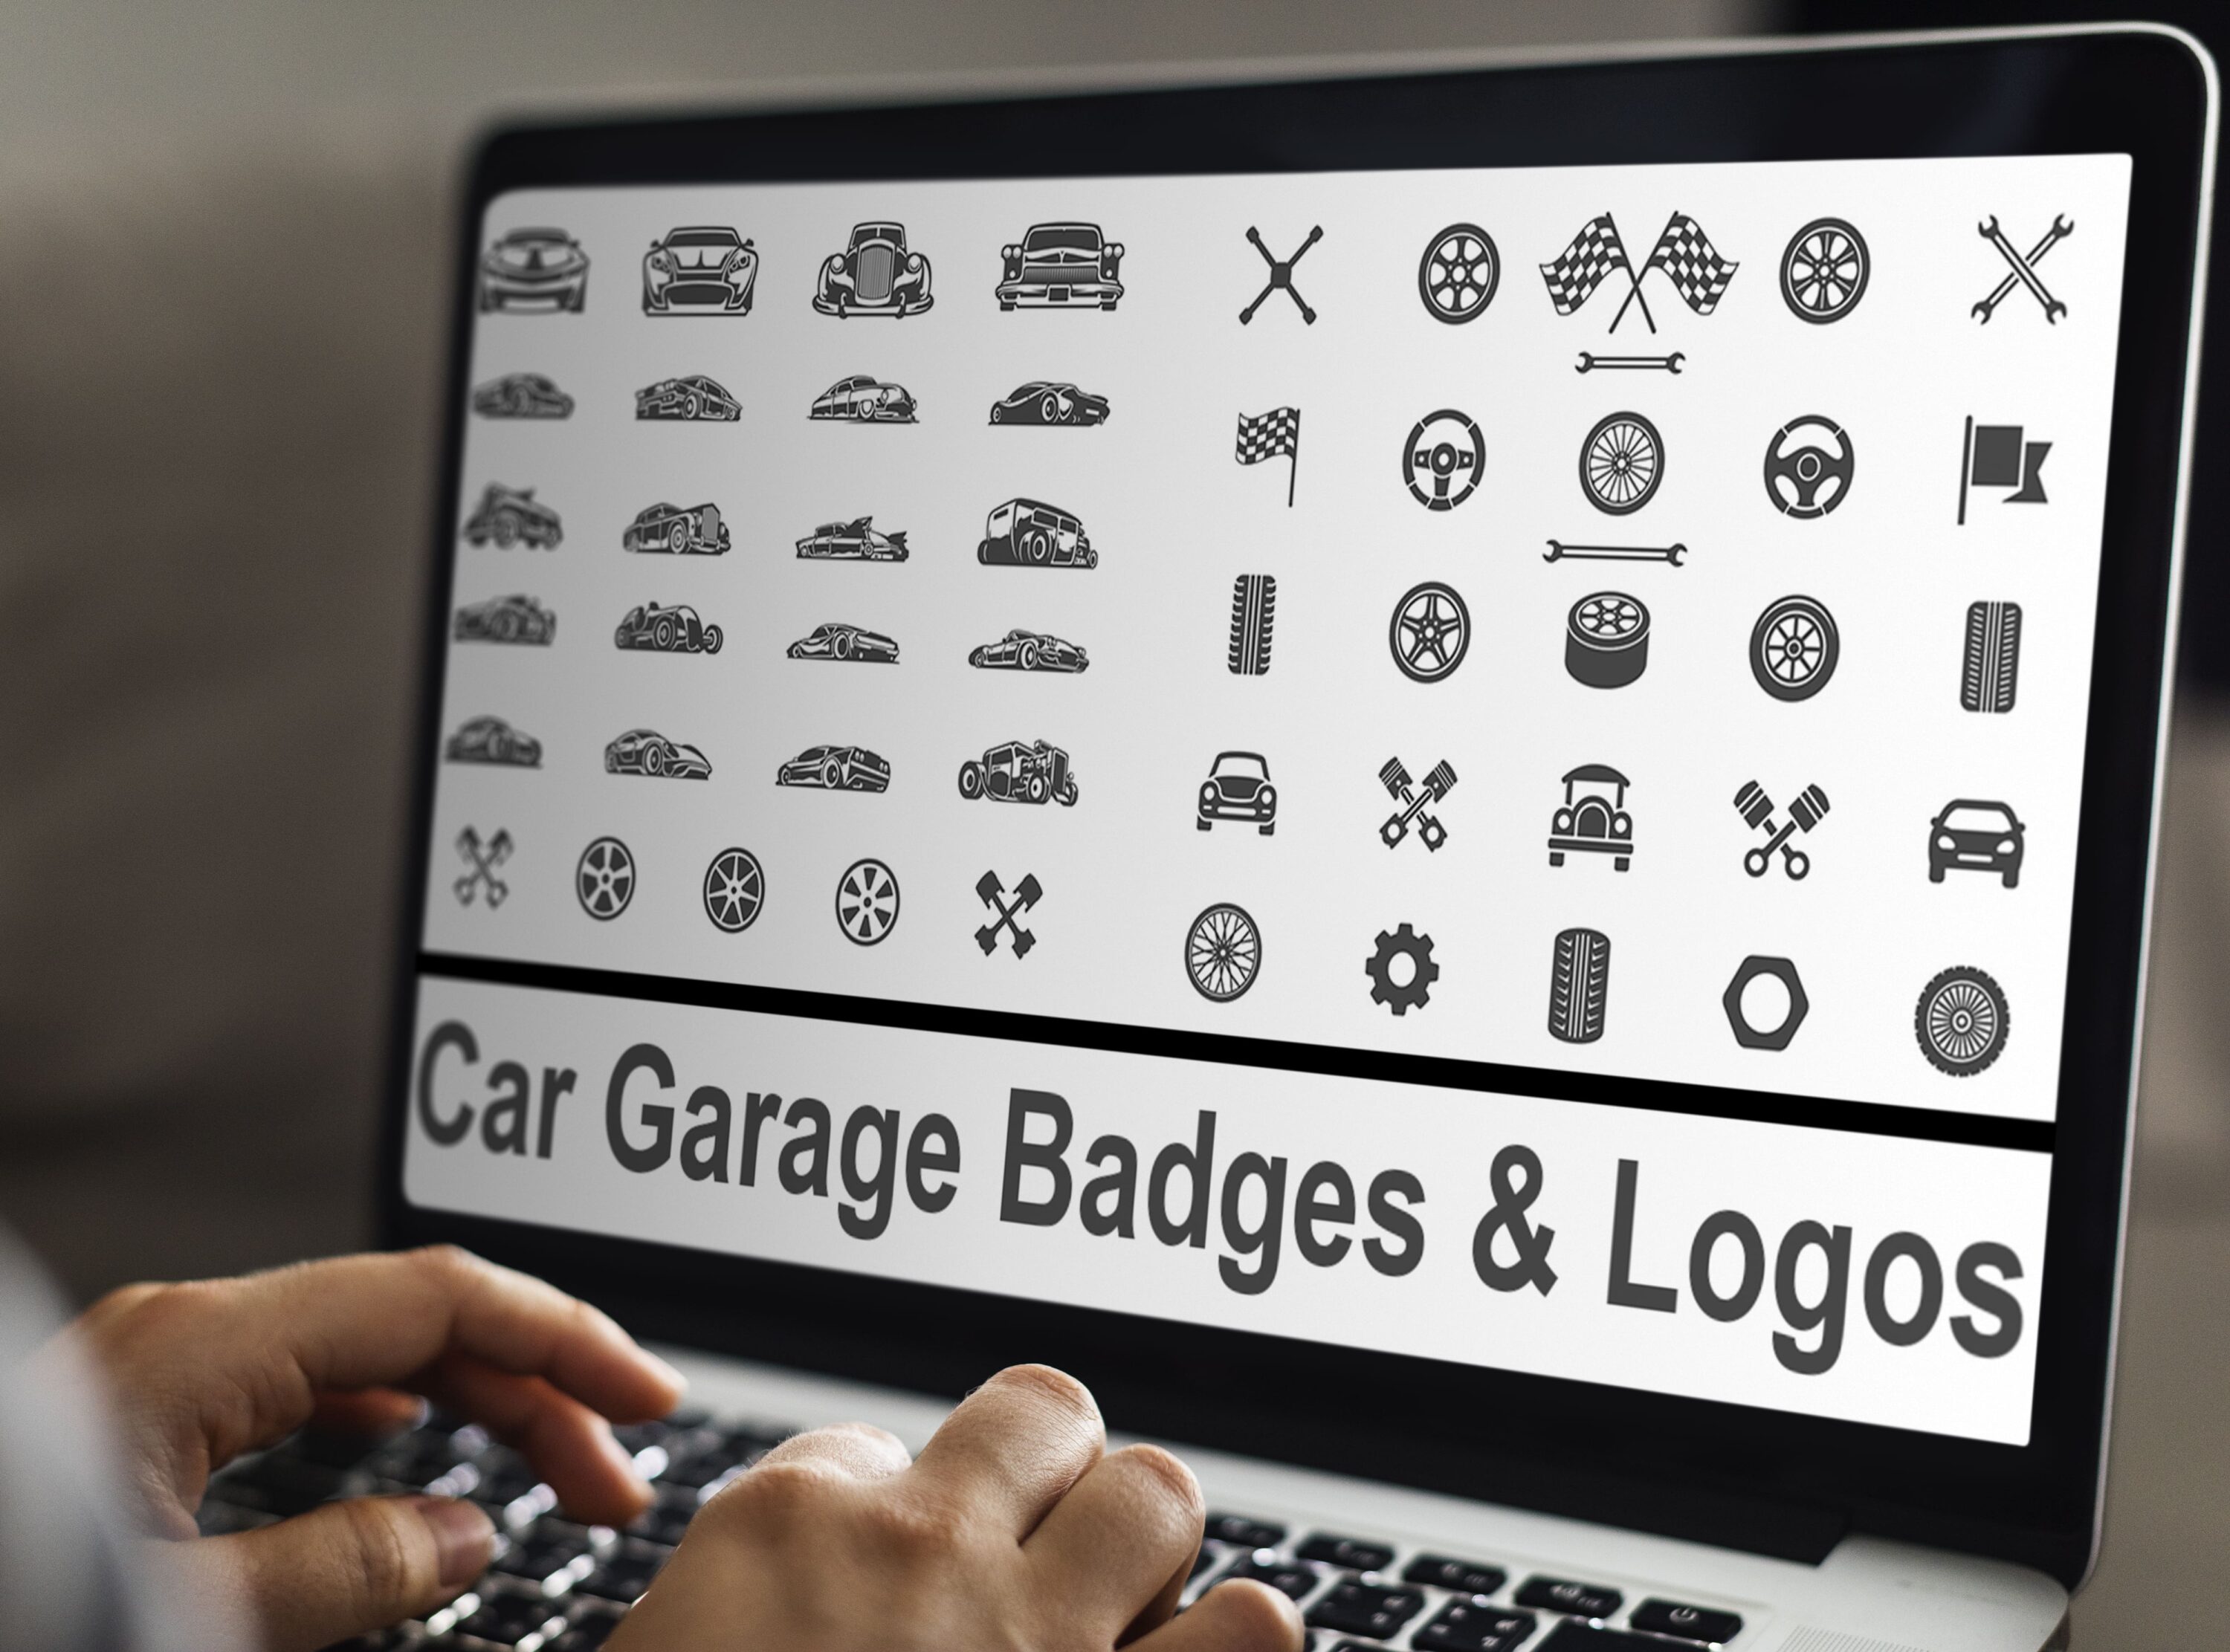 Laptop option of the Car Garage Badges & Logos.